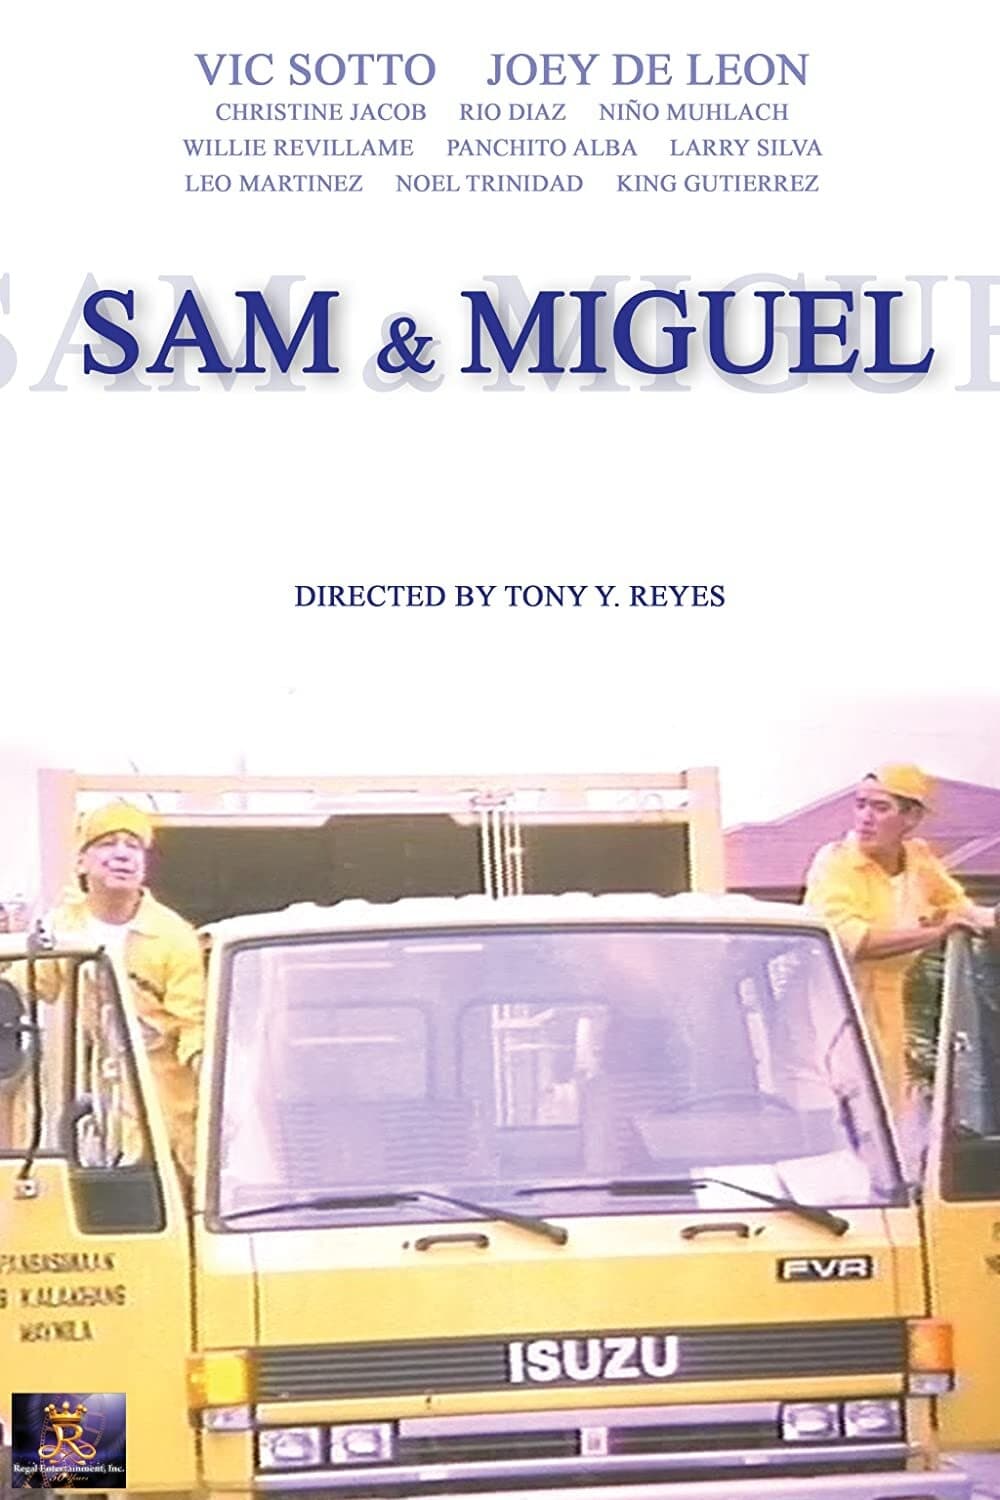 Sam & Miguel (Your Basura, No Problema)